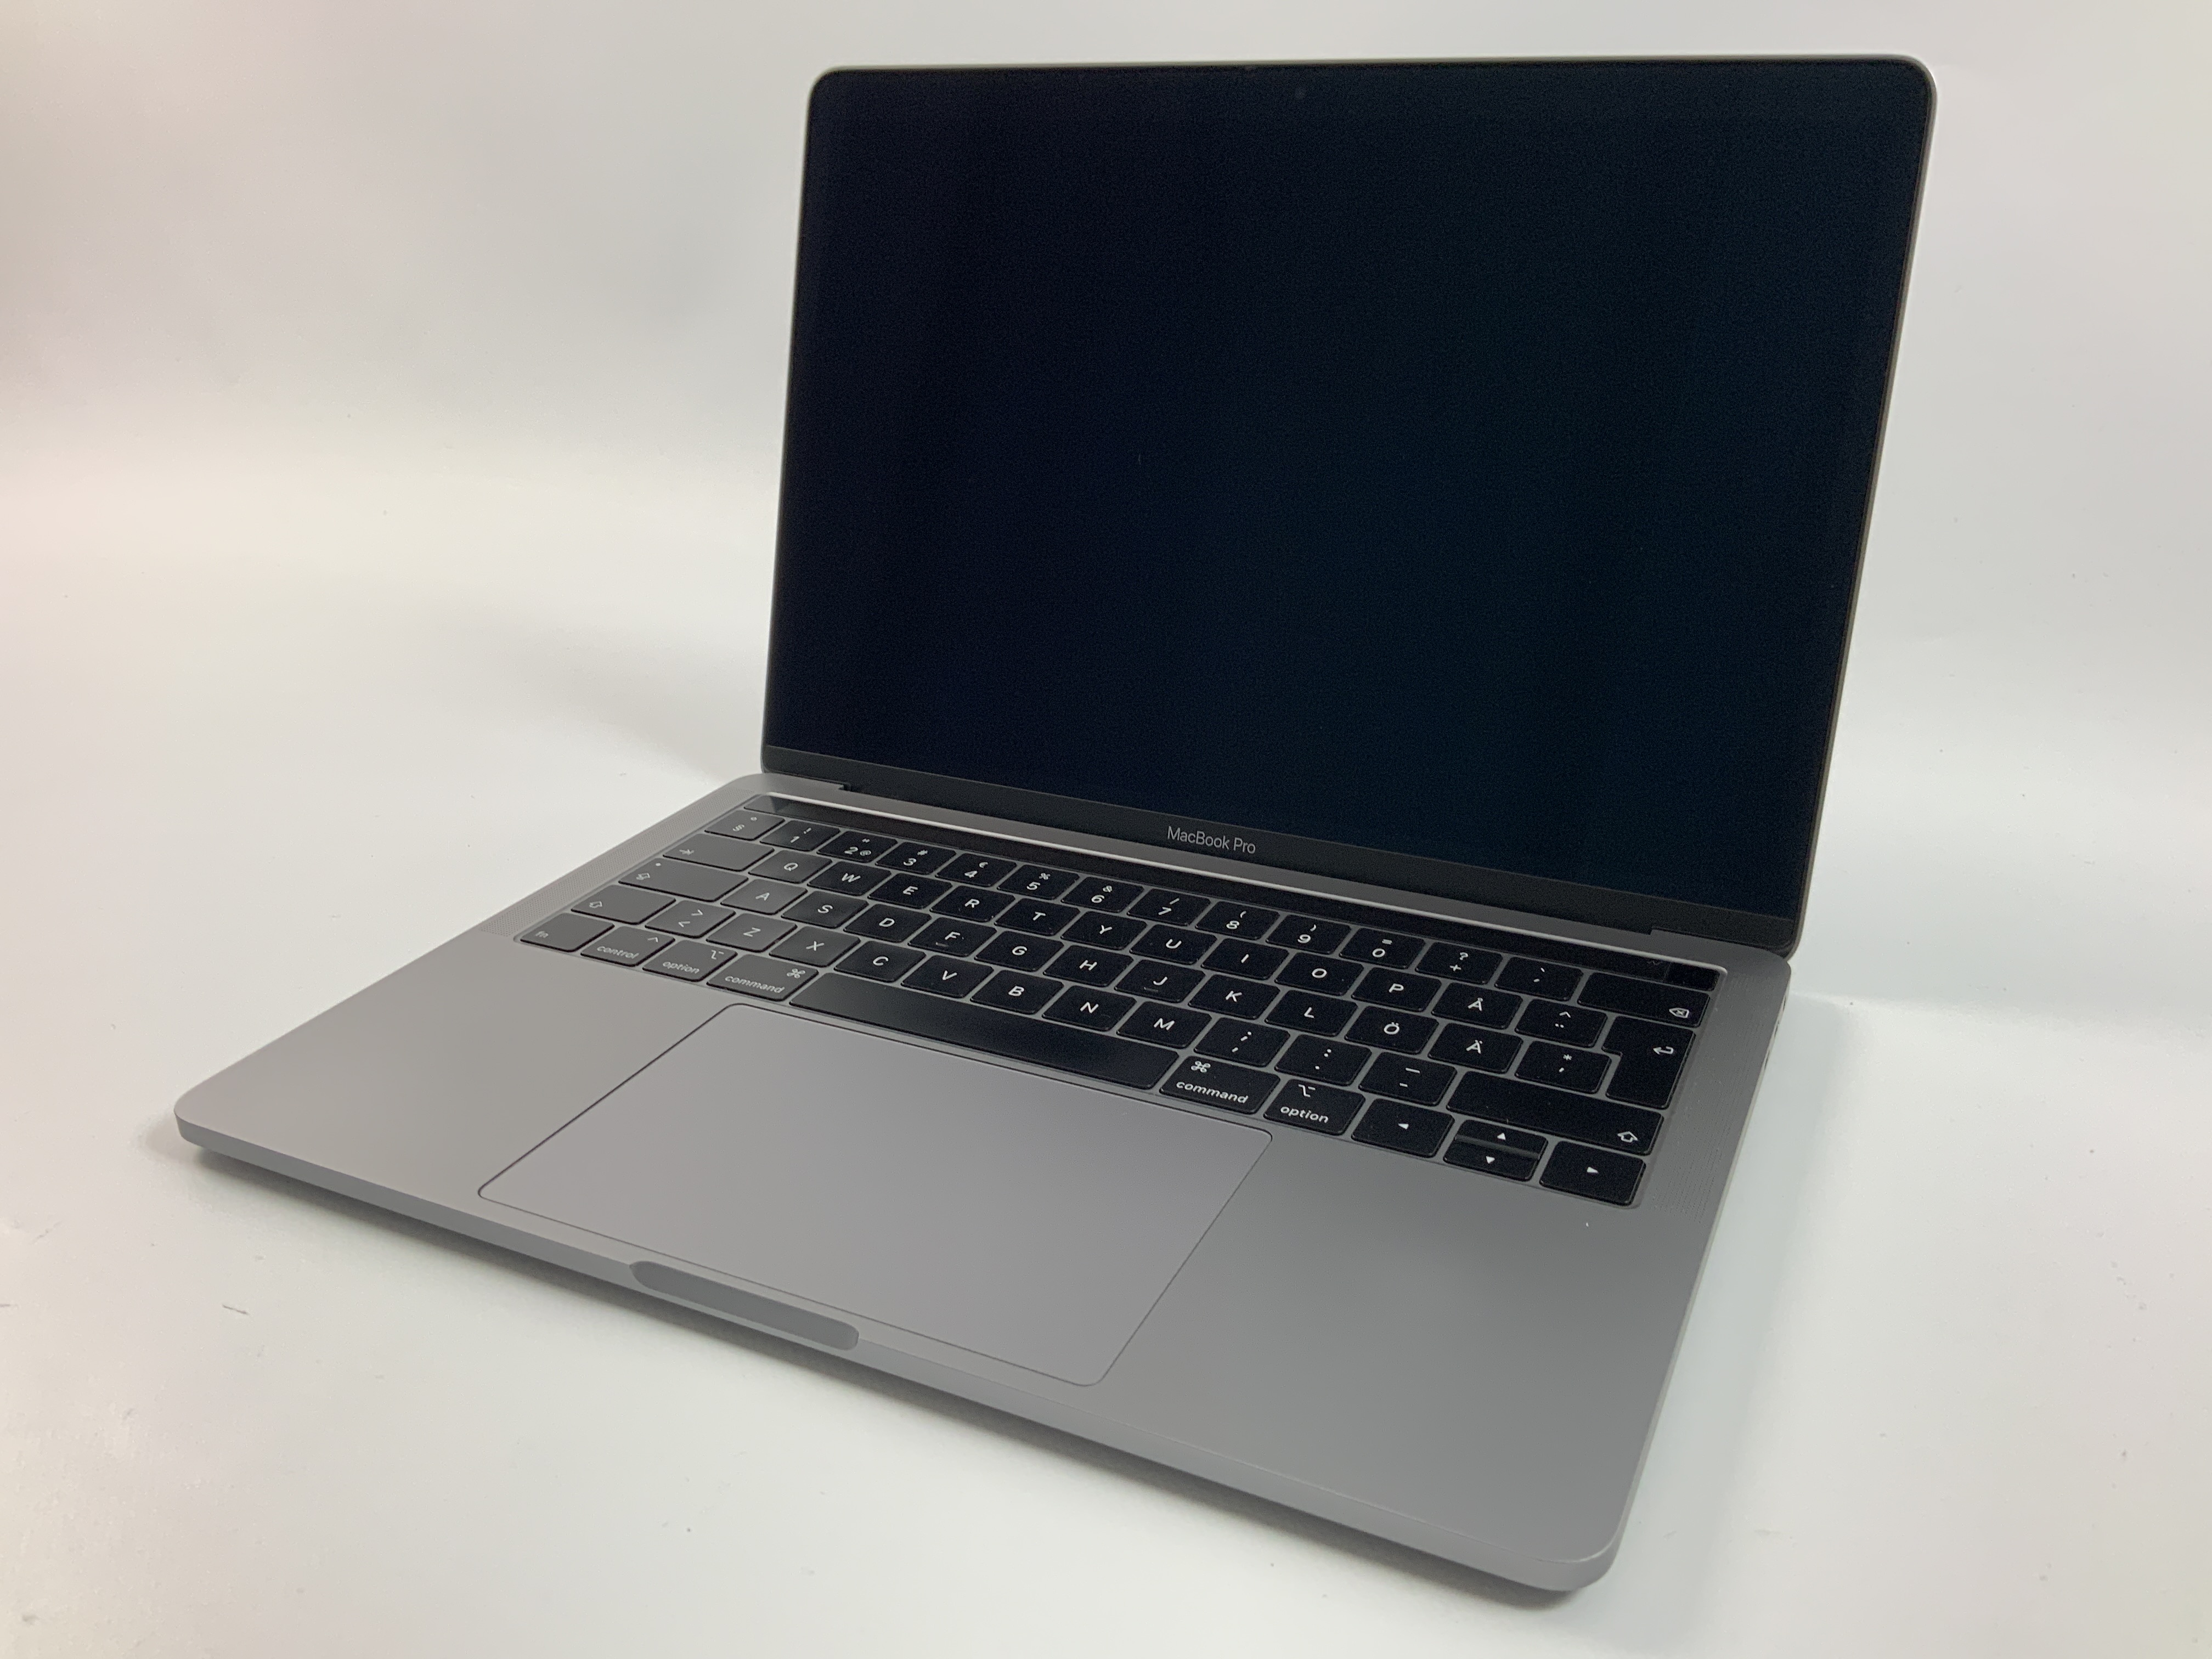 MacBook Pro 13" 4TBT Mid 2019 (Intel Quad-Core i7 2.8 GHz 16 GB RAM 256 GB SSD), Space Gray, Intel Quad-Core i7 2.8 GHz, 16 GB RAM, 256 GB SSD, obraz 1